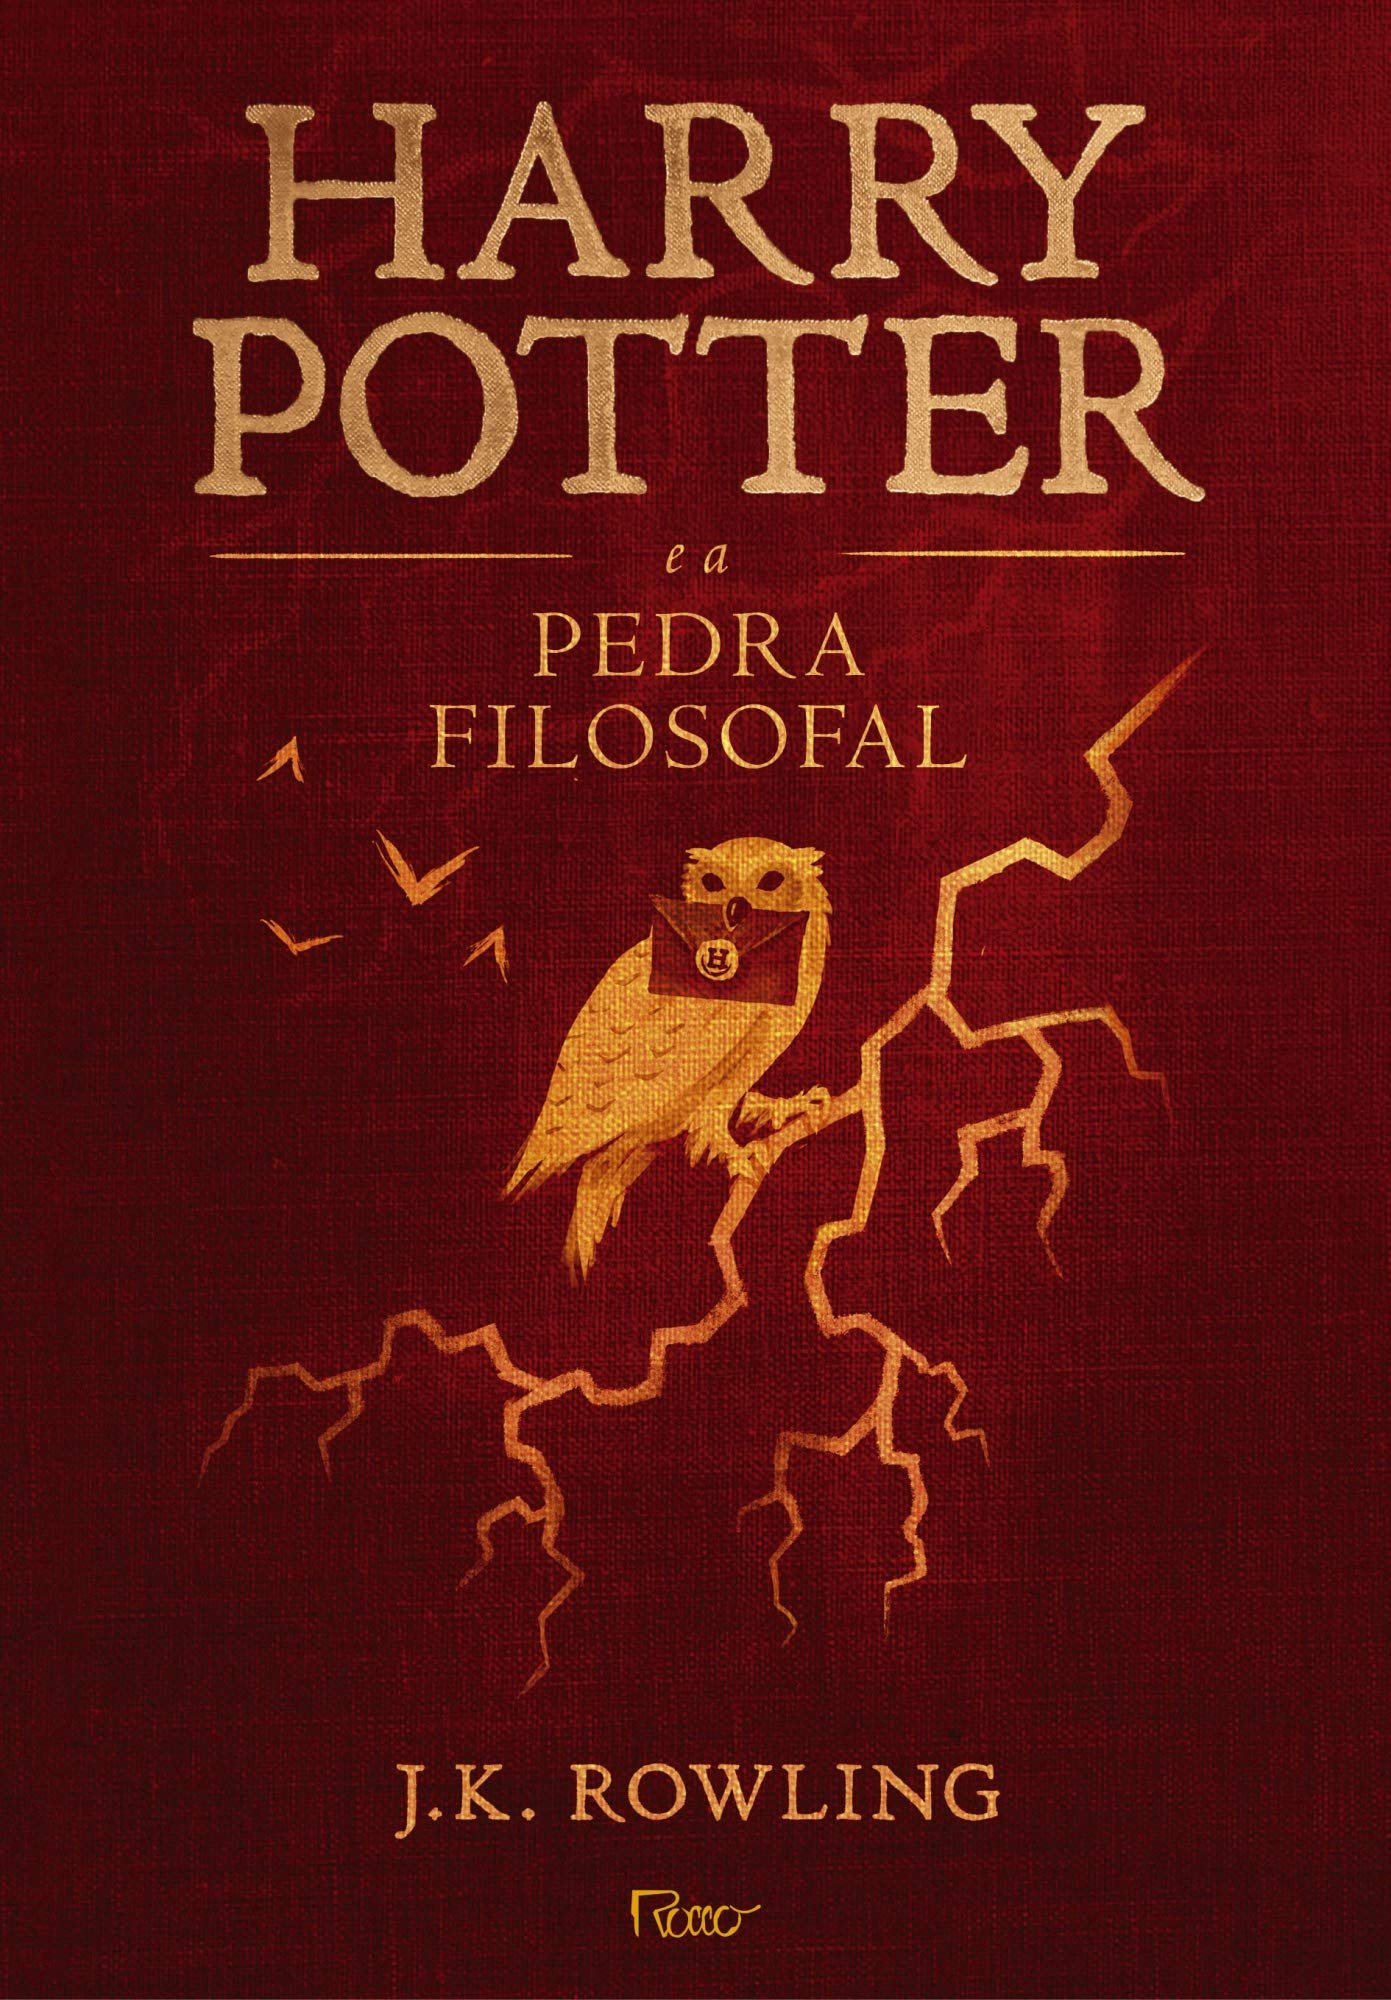 Capa do livro “Harry Potter e a Pedra Filosofal”